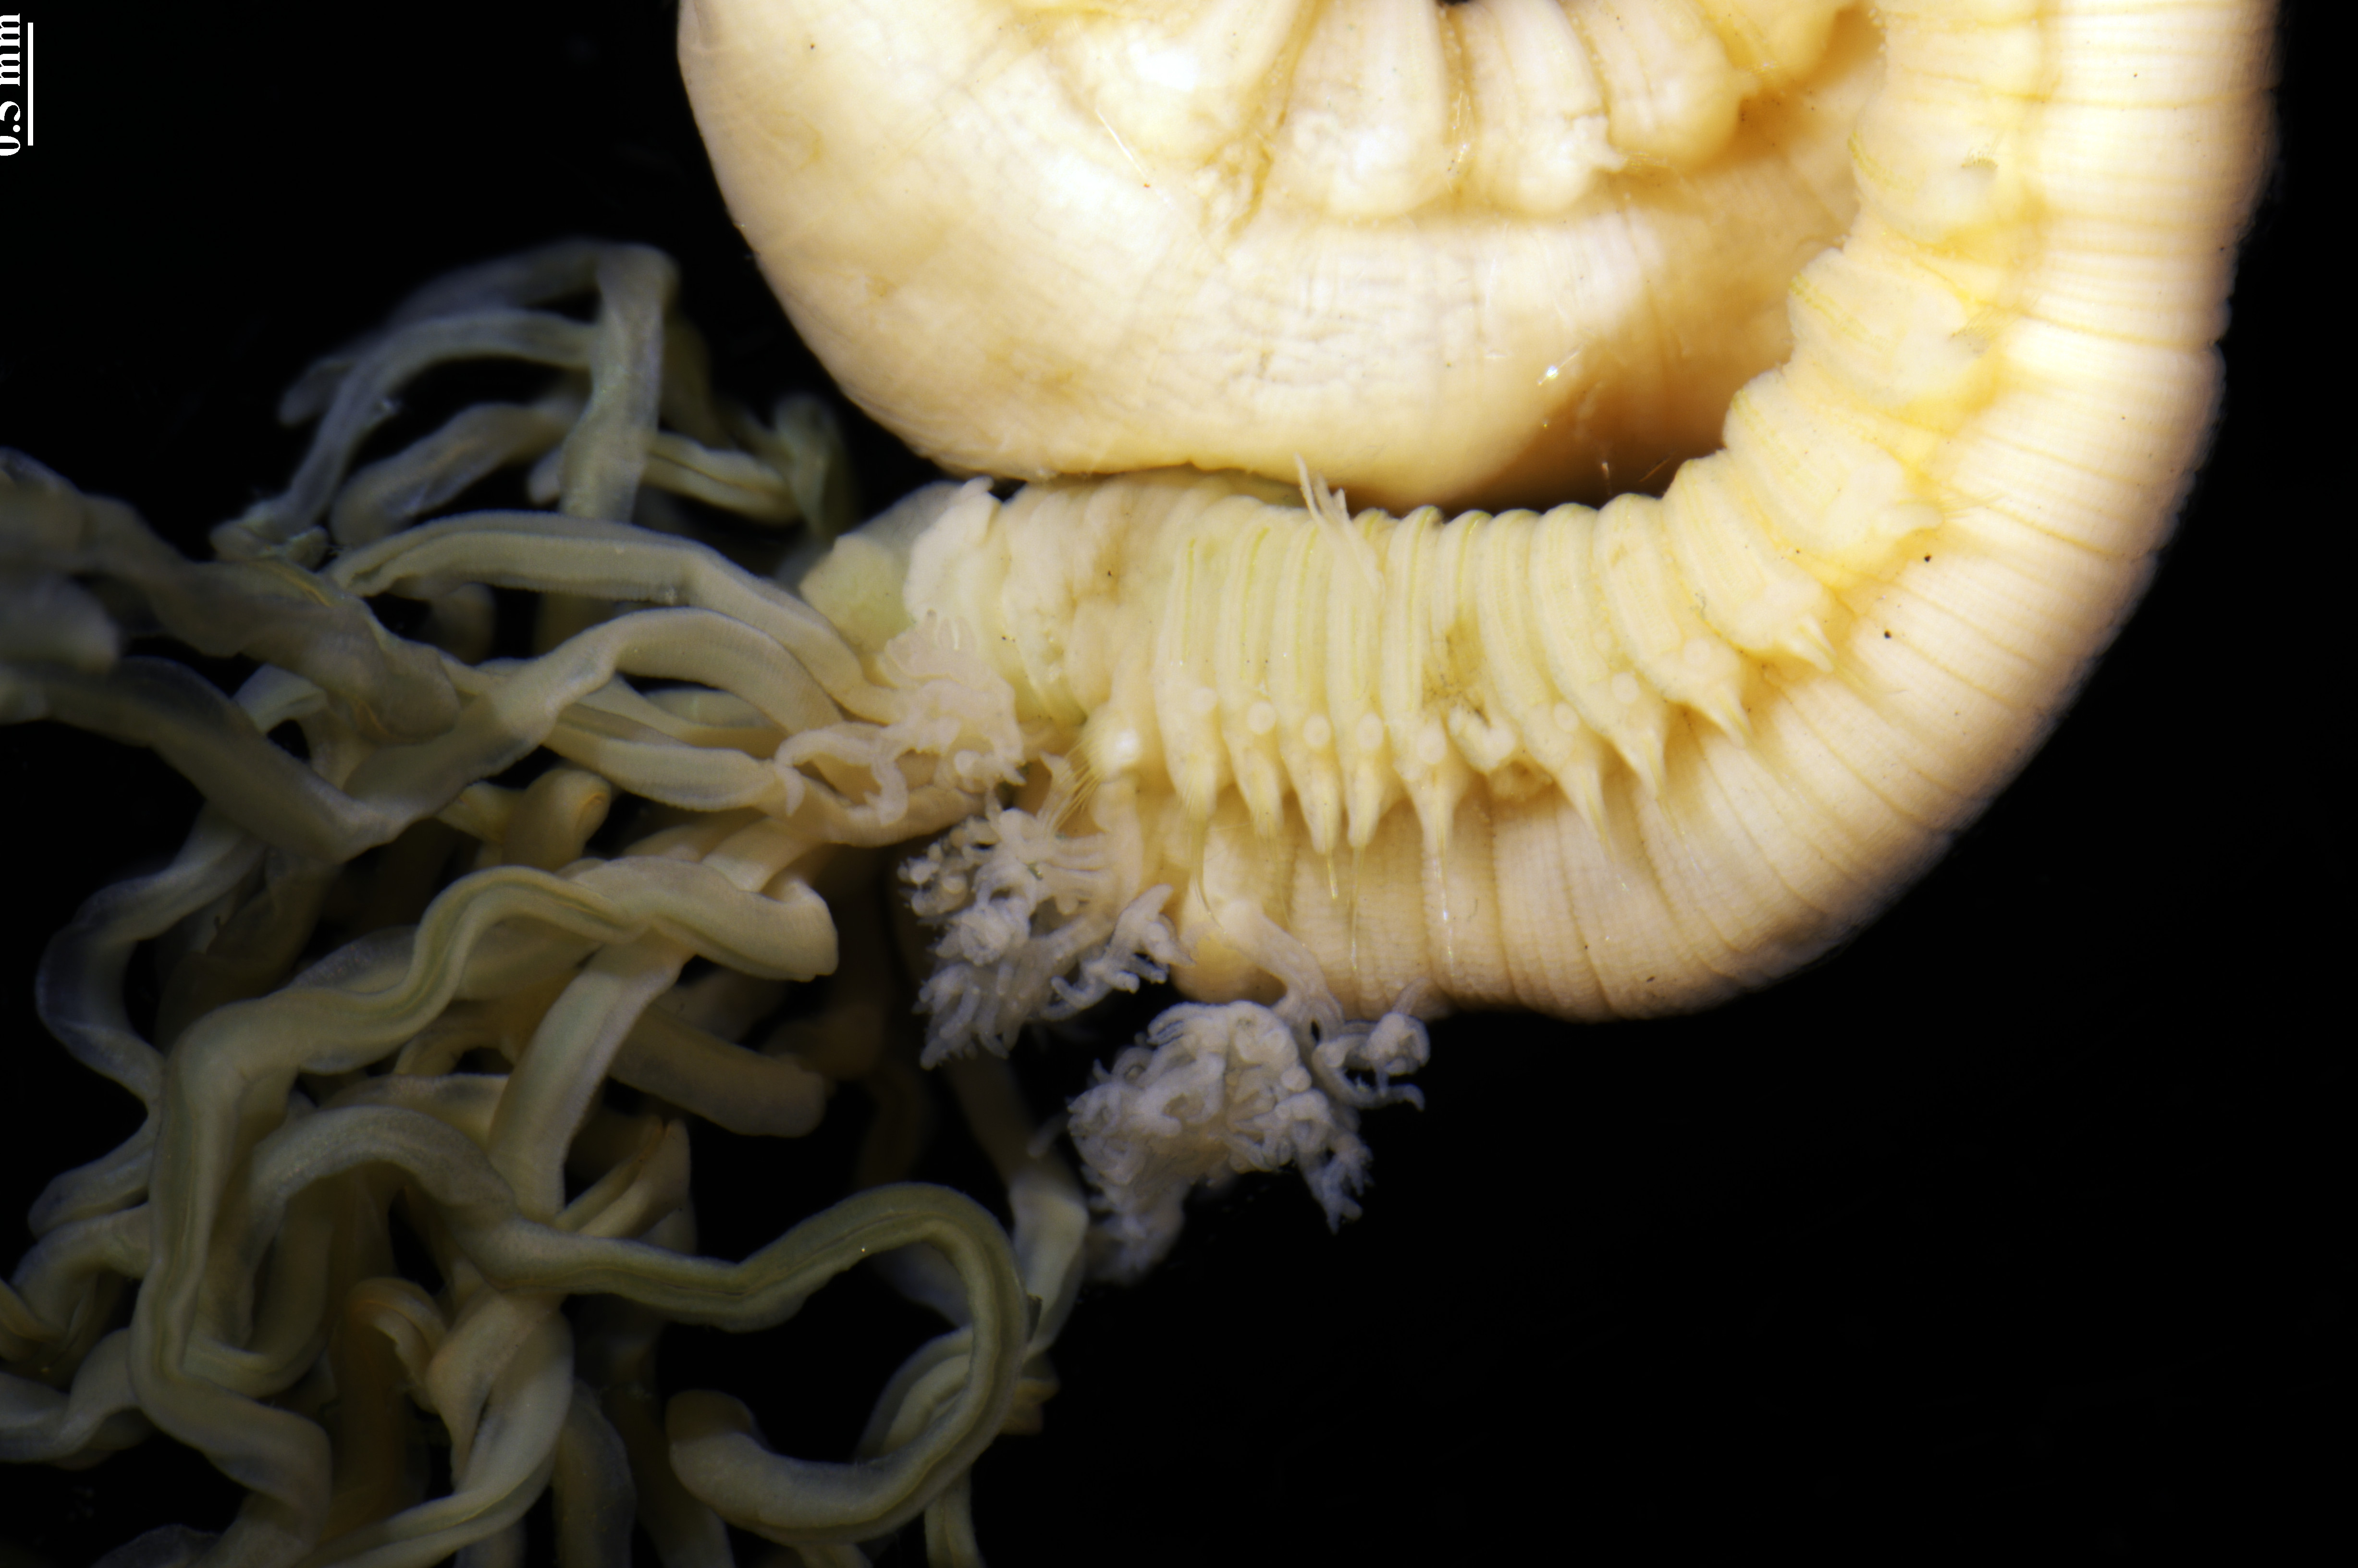 Les tentacules buccaux de Terebella banksyi sont bien visibles et représentent bien ce qu'est un ver spaghetti. © Nicolas Lavesque